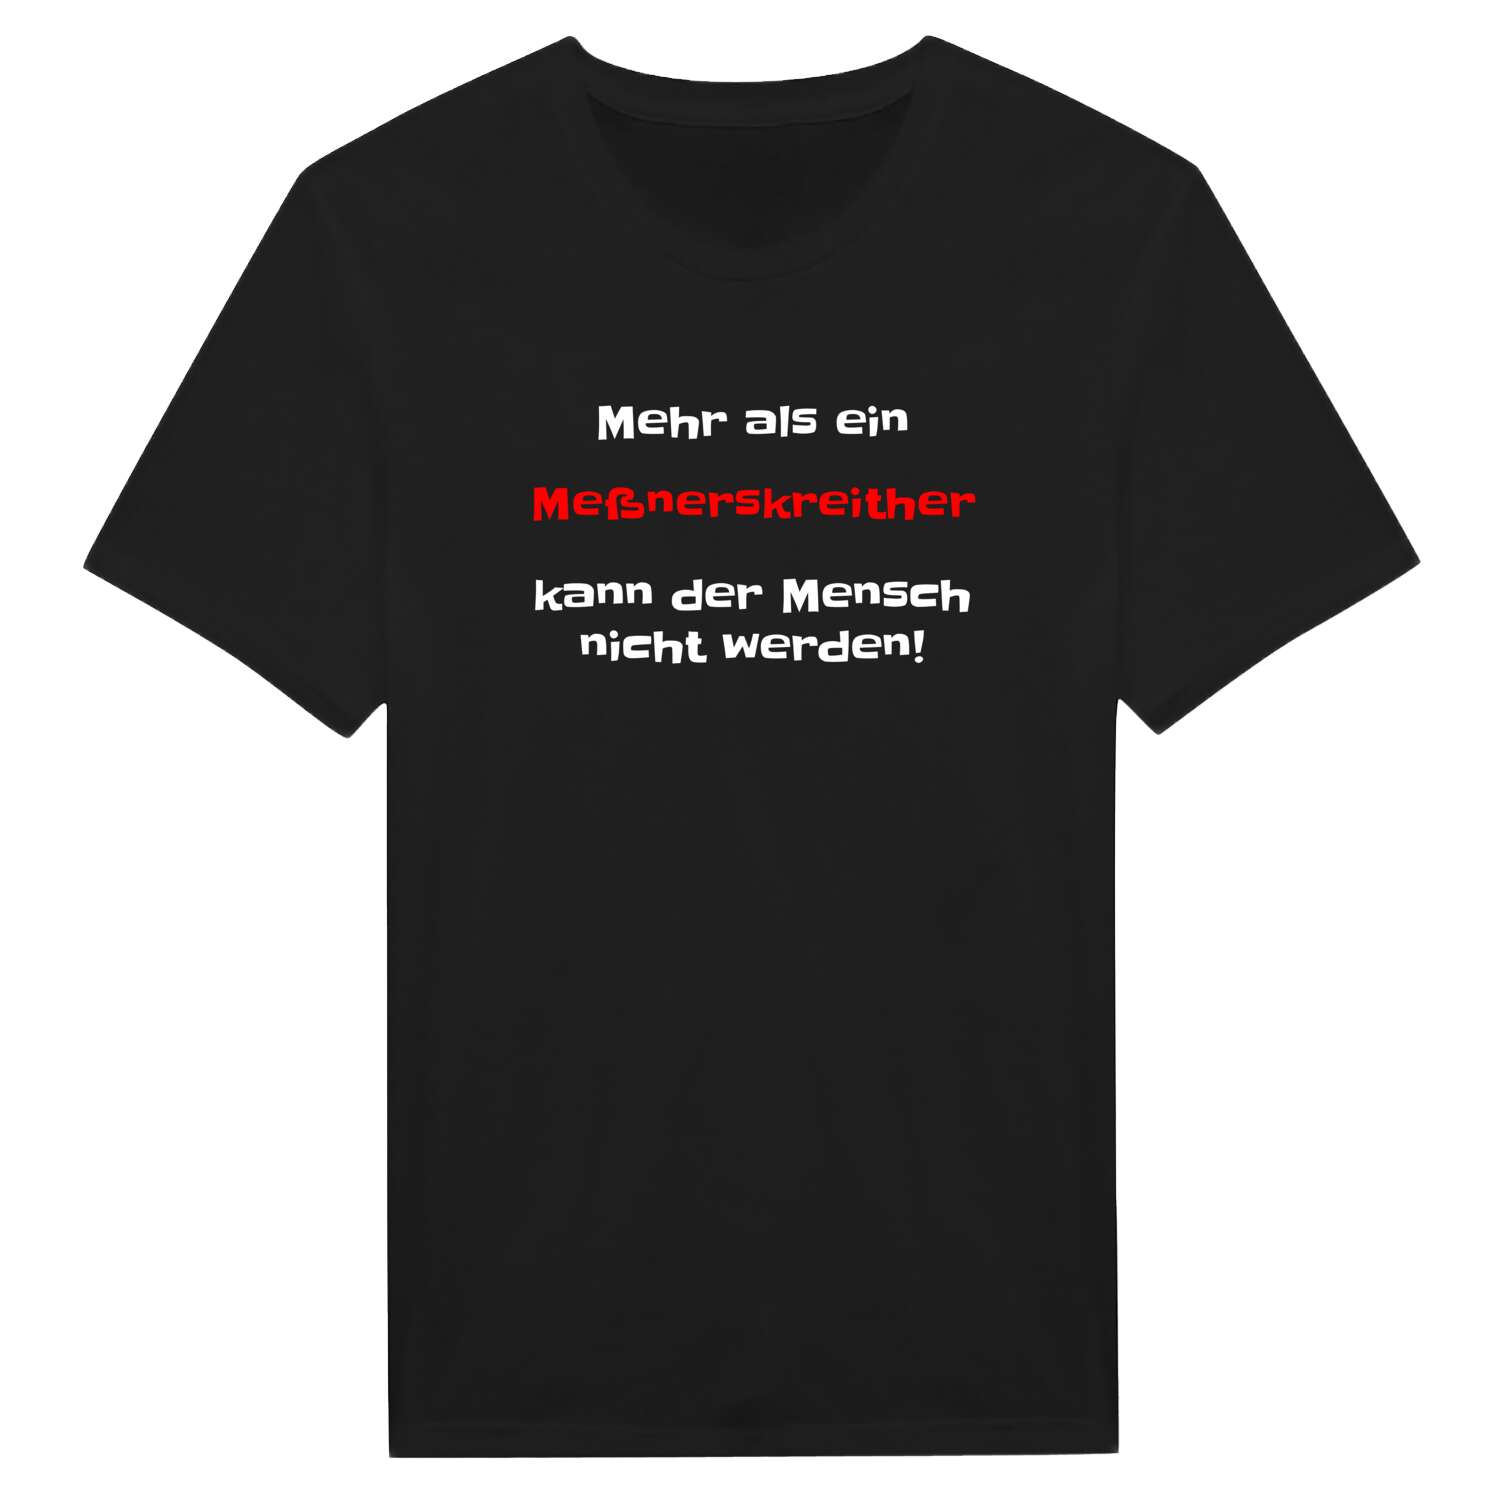 Meßnerskreith T-Shirt »Mehr als ein«